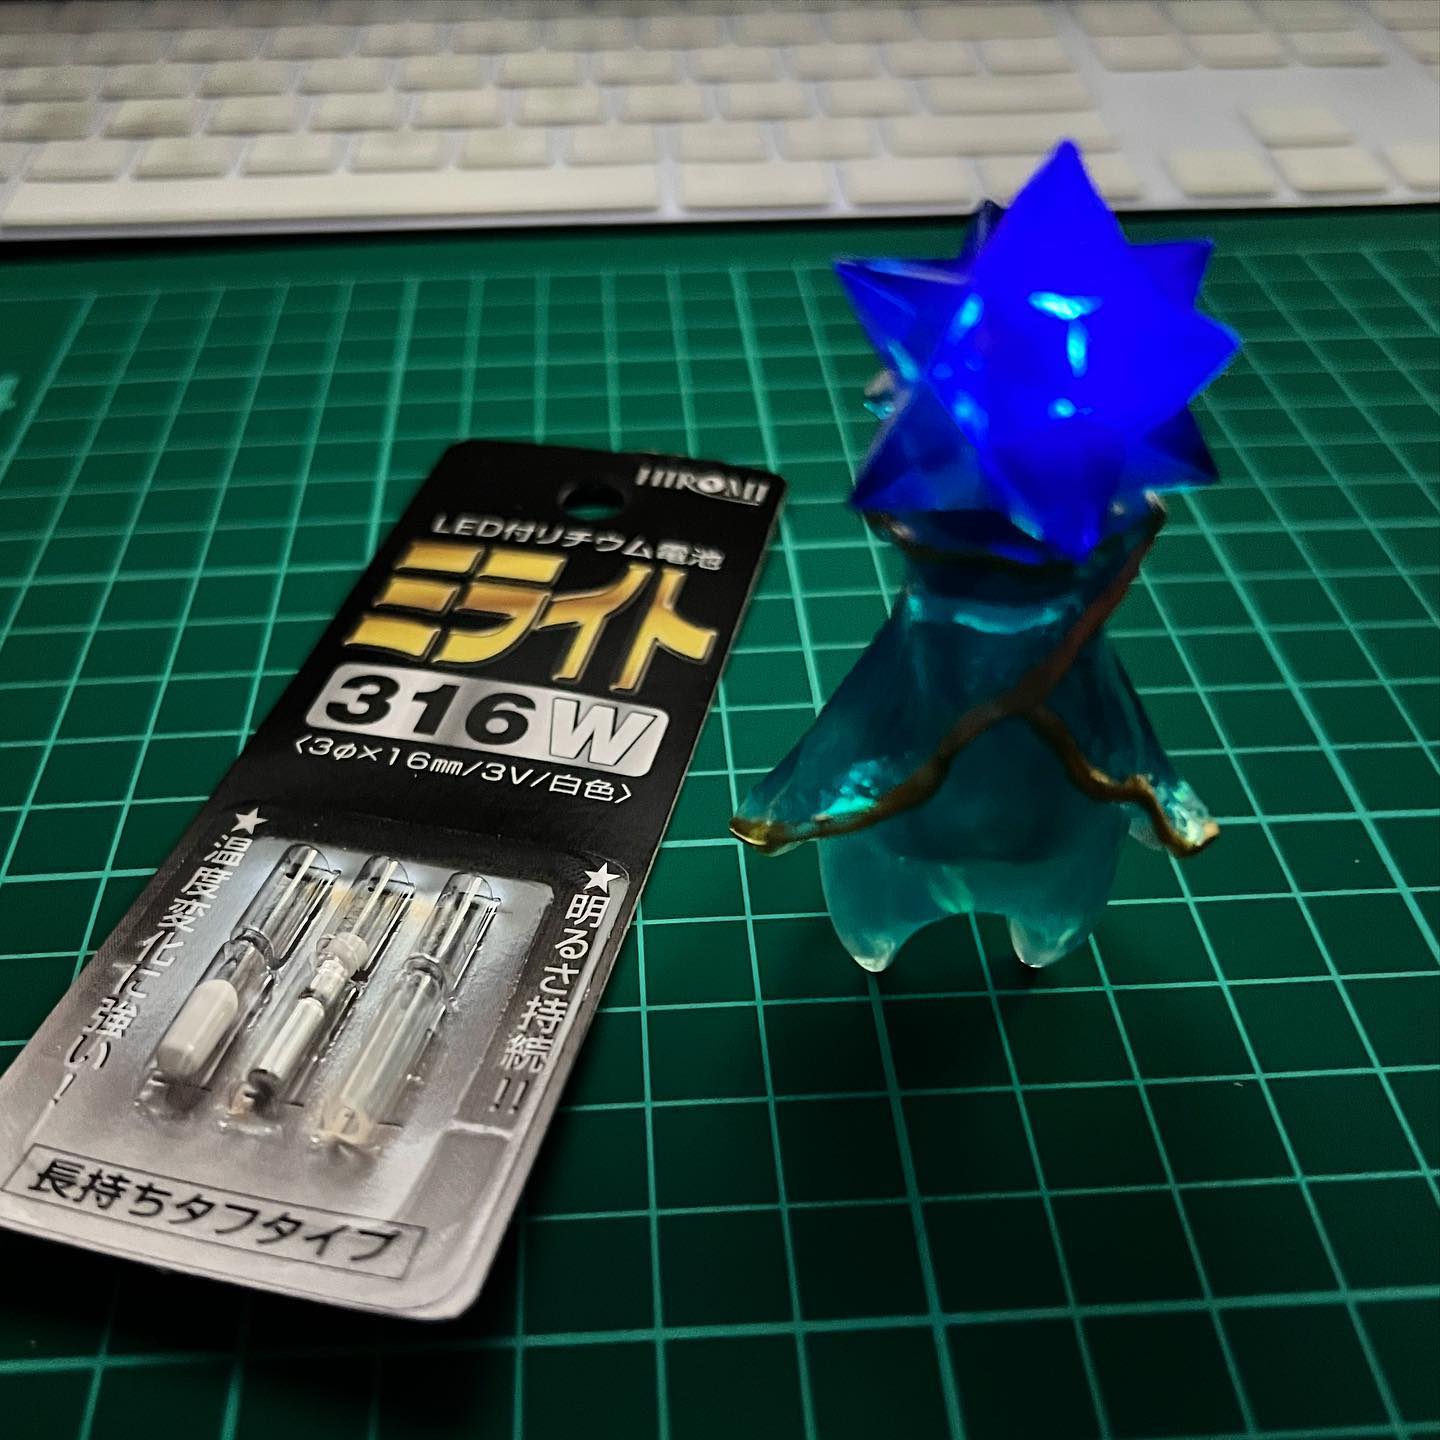 星の子の頭に小型LED付き電池「ミライト」を入れてみた。このサイズで電池付きのLEDライトがあるとは！ 色々と遊べそうなLED電池です。